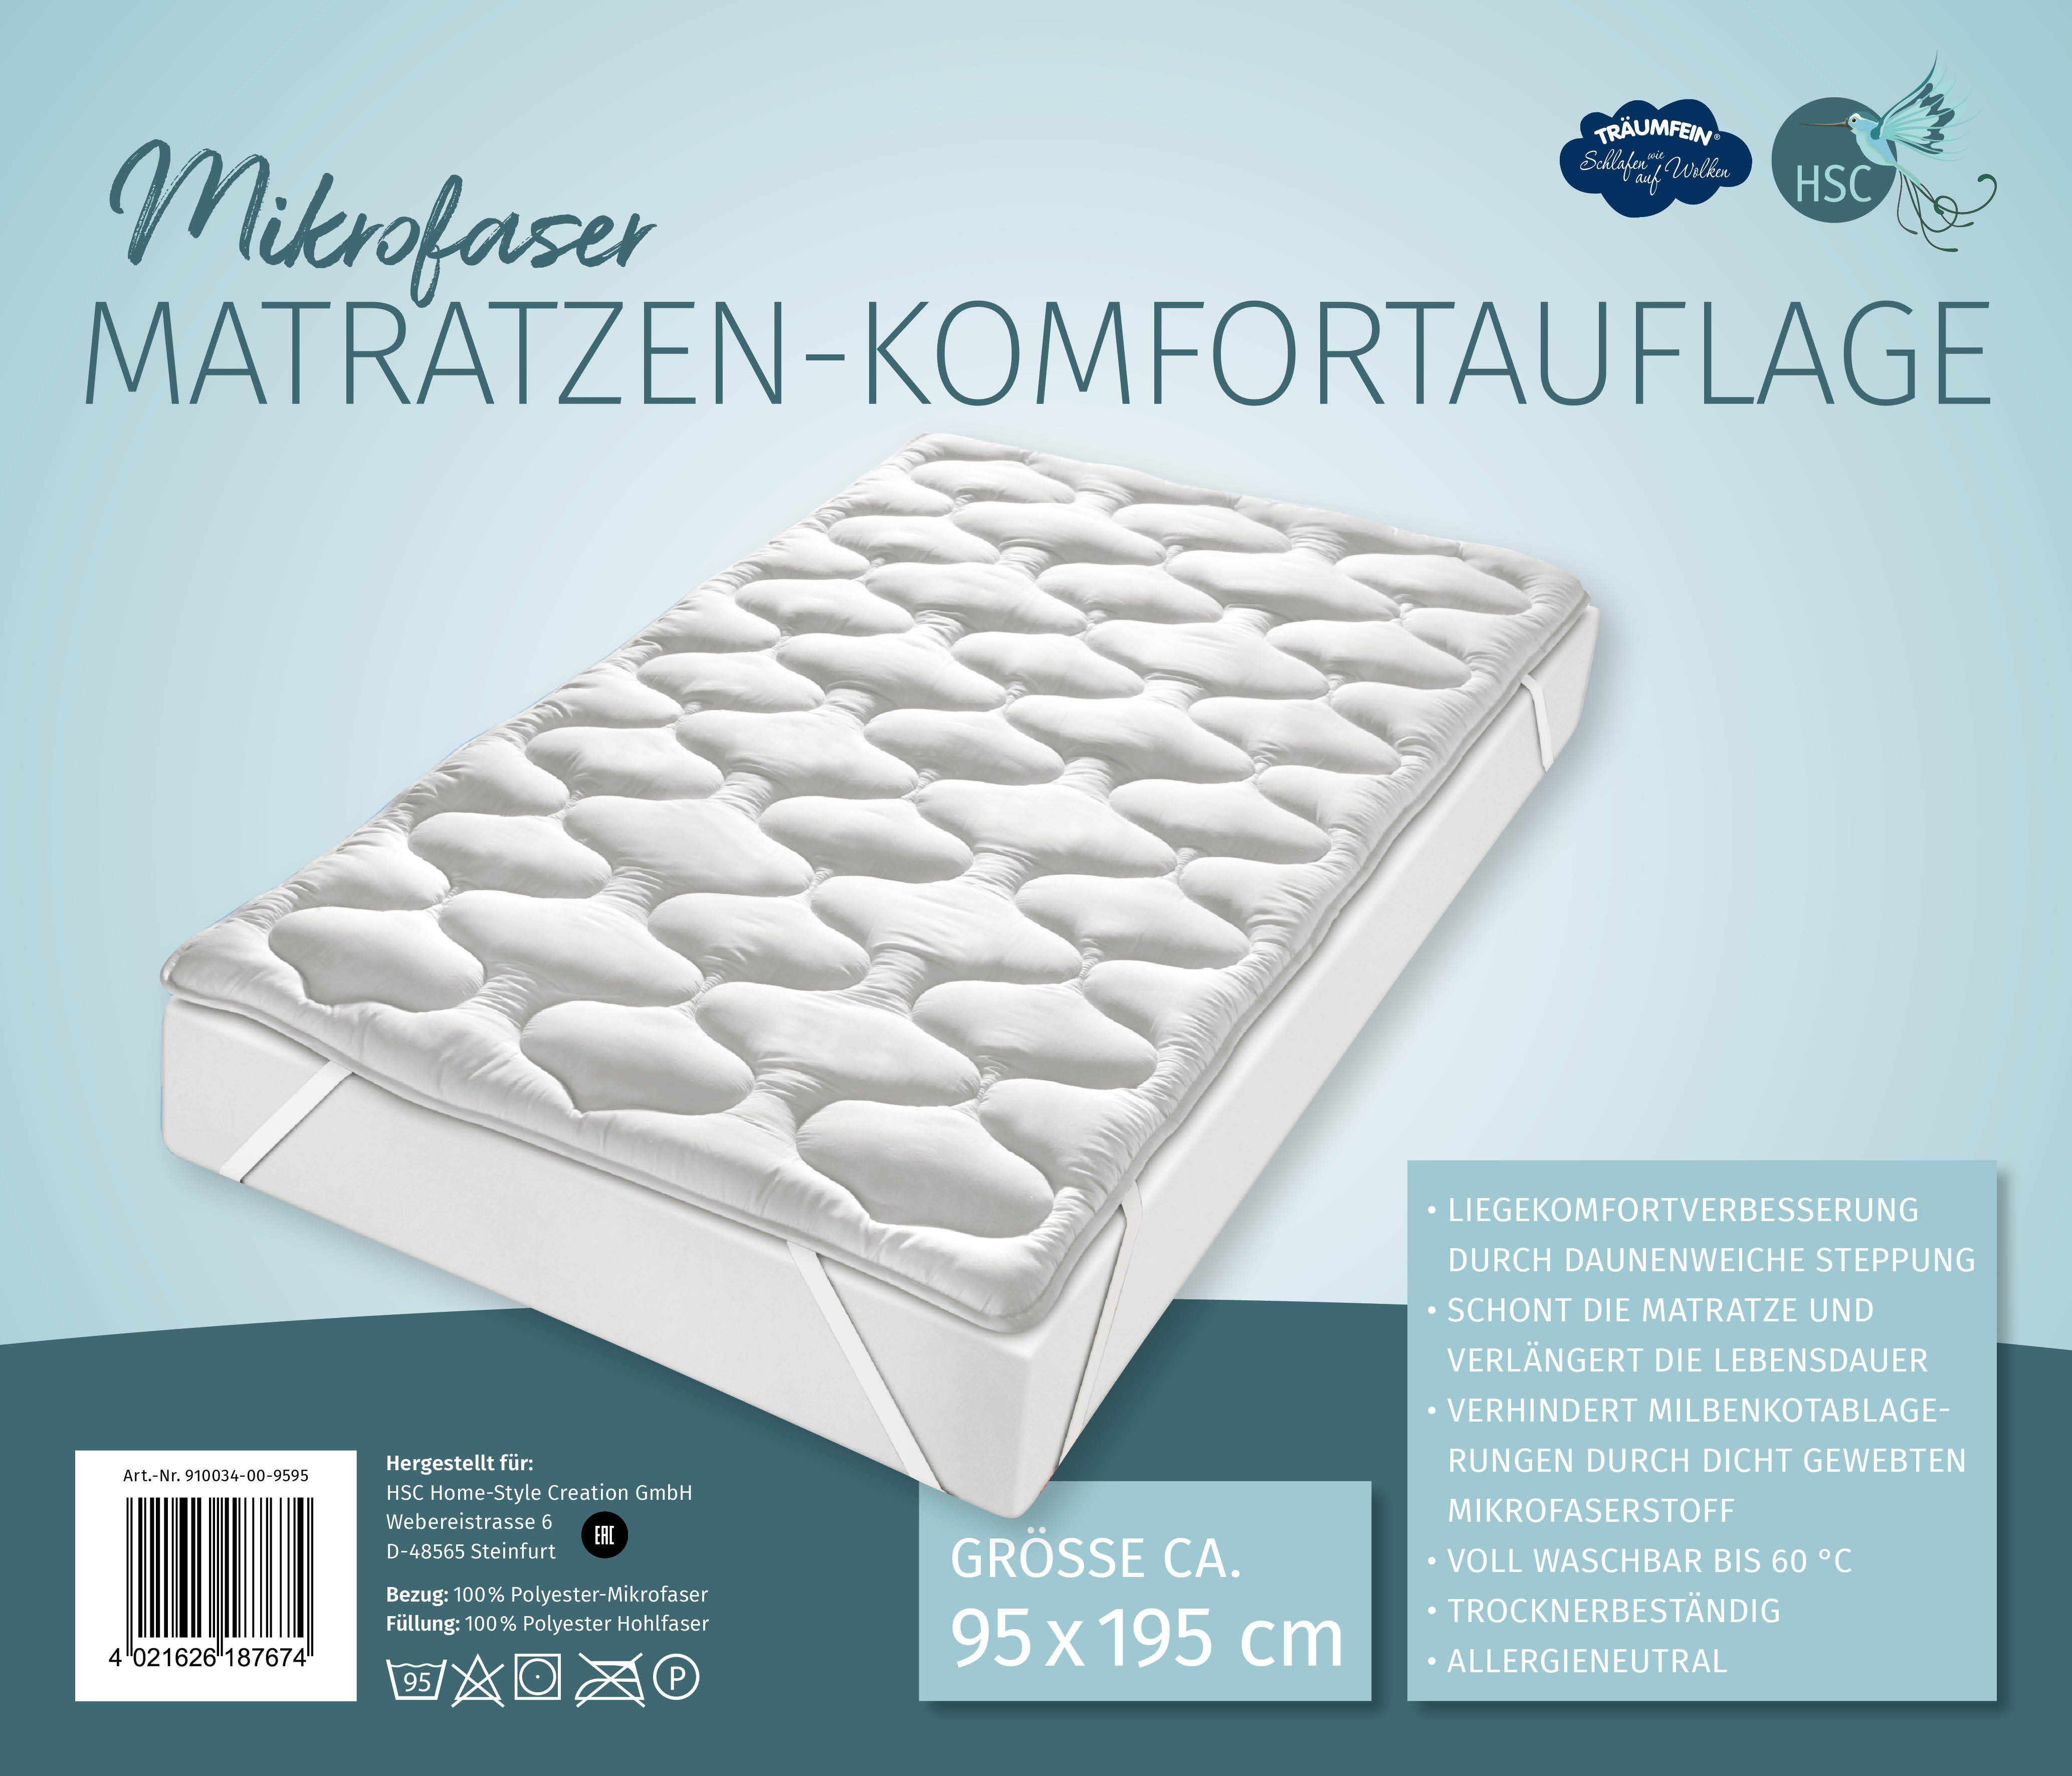 Matratzenauflage Mikrofaser Matratzen-Komfortauflage HSC  Home-Style-Creation GmbH, Allergieneutral